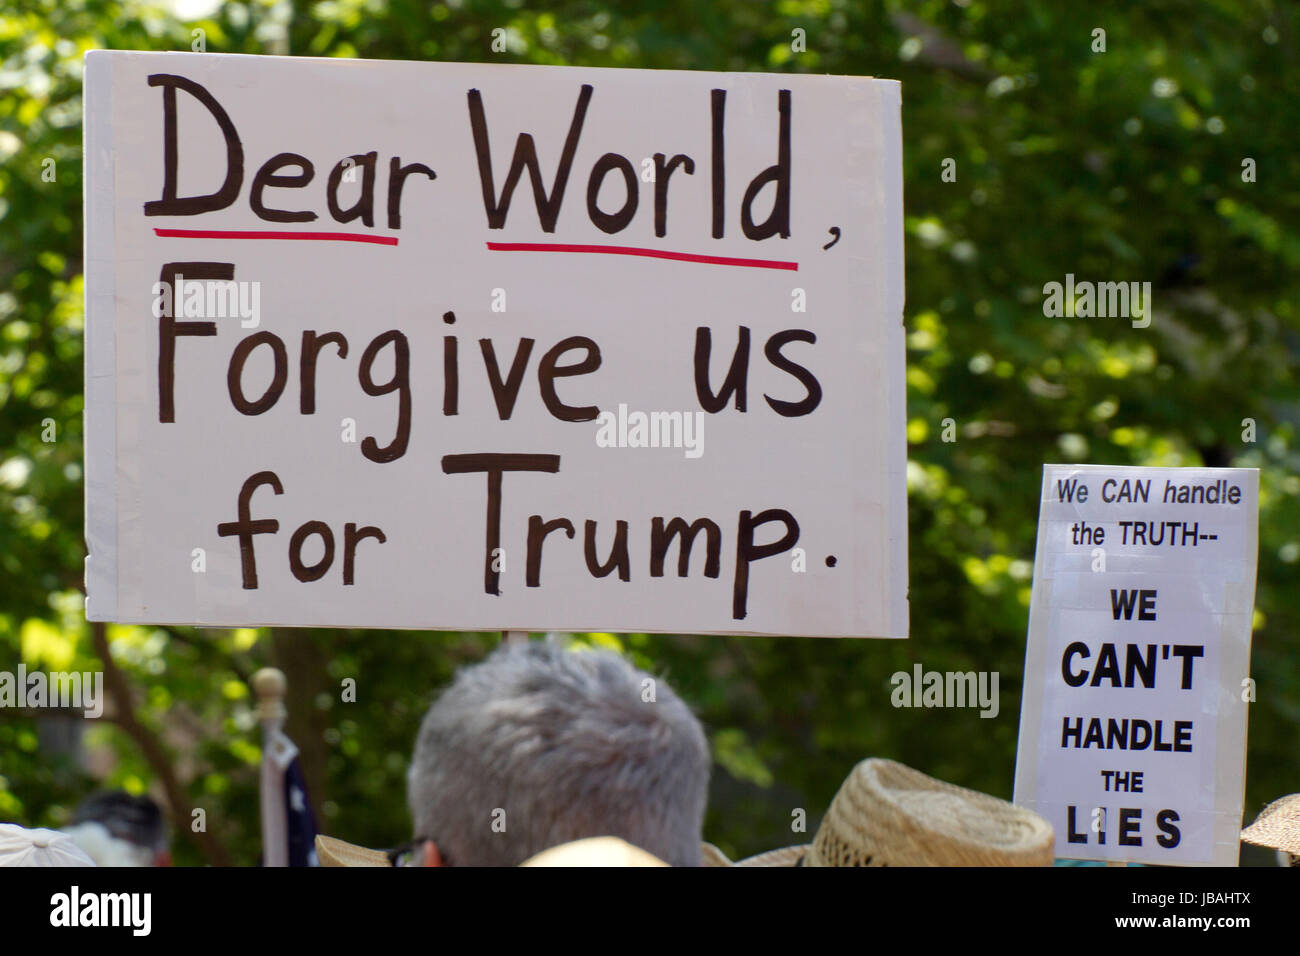 Asheville, North Carolina, USA - 3. Juni 2017: Nahaufnahme von Menschen halten politische Zeichen an ein Sprichwort "März For Truth" Rallye "Liebe Welt, verzeihen Sie uns Stockfoto